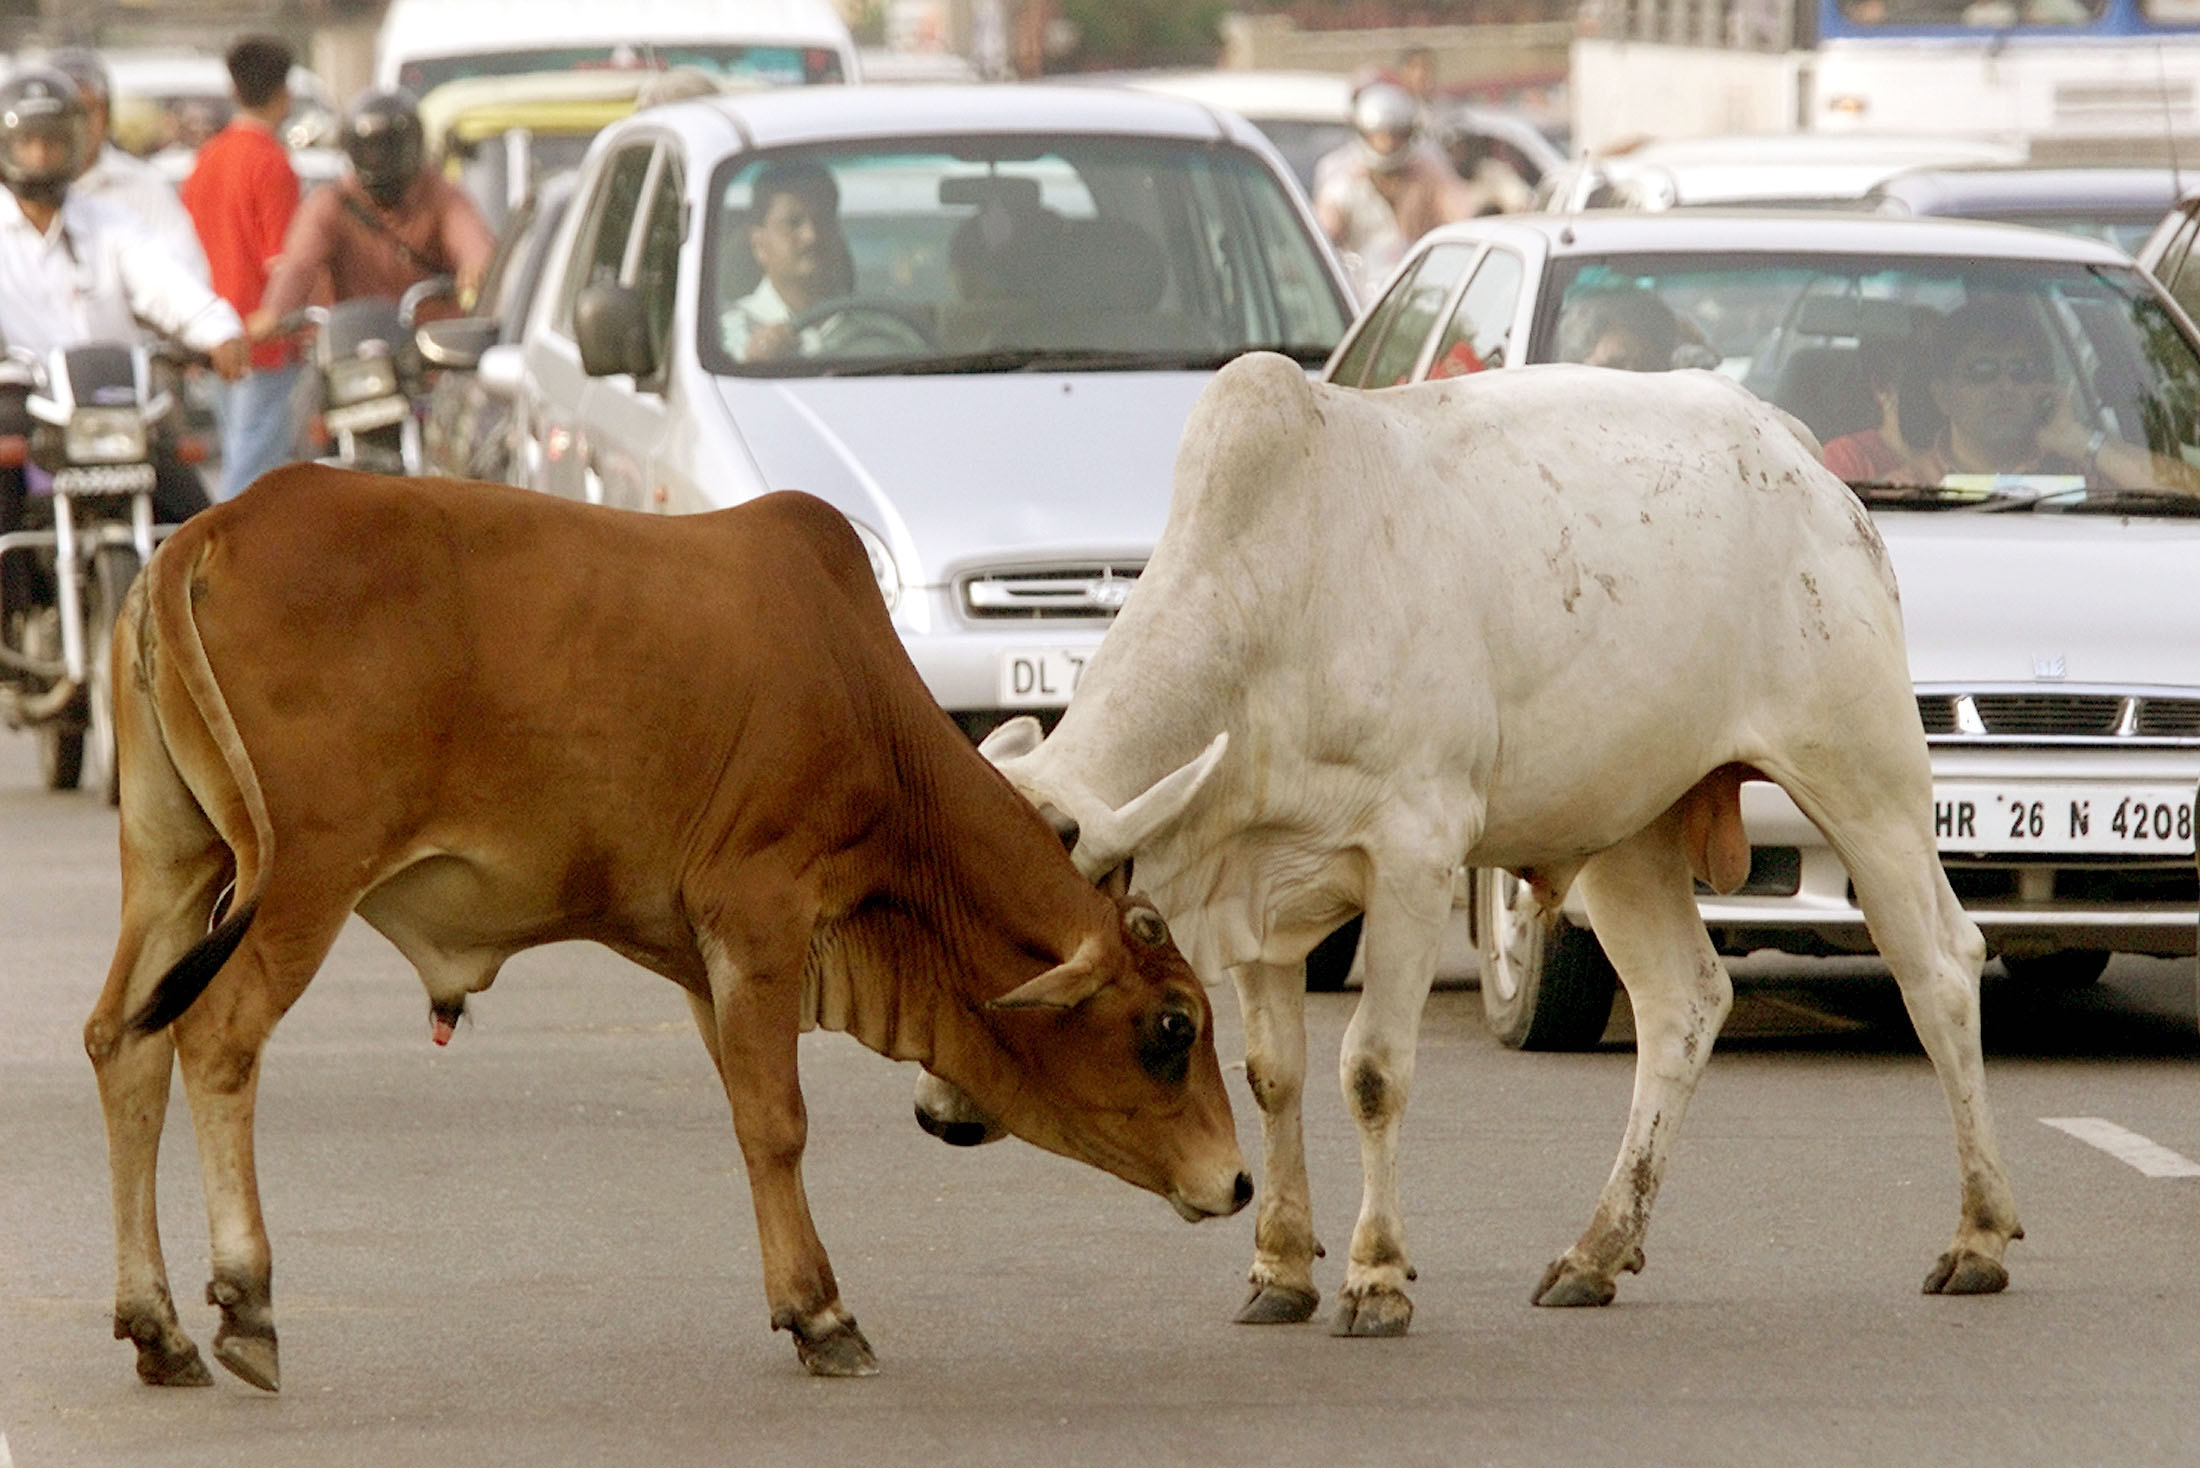 Linchan a musulmán en la India tras ser acusado de "traficar" vacas